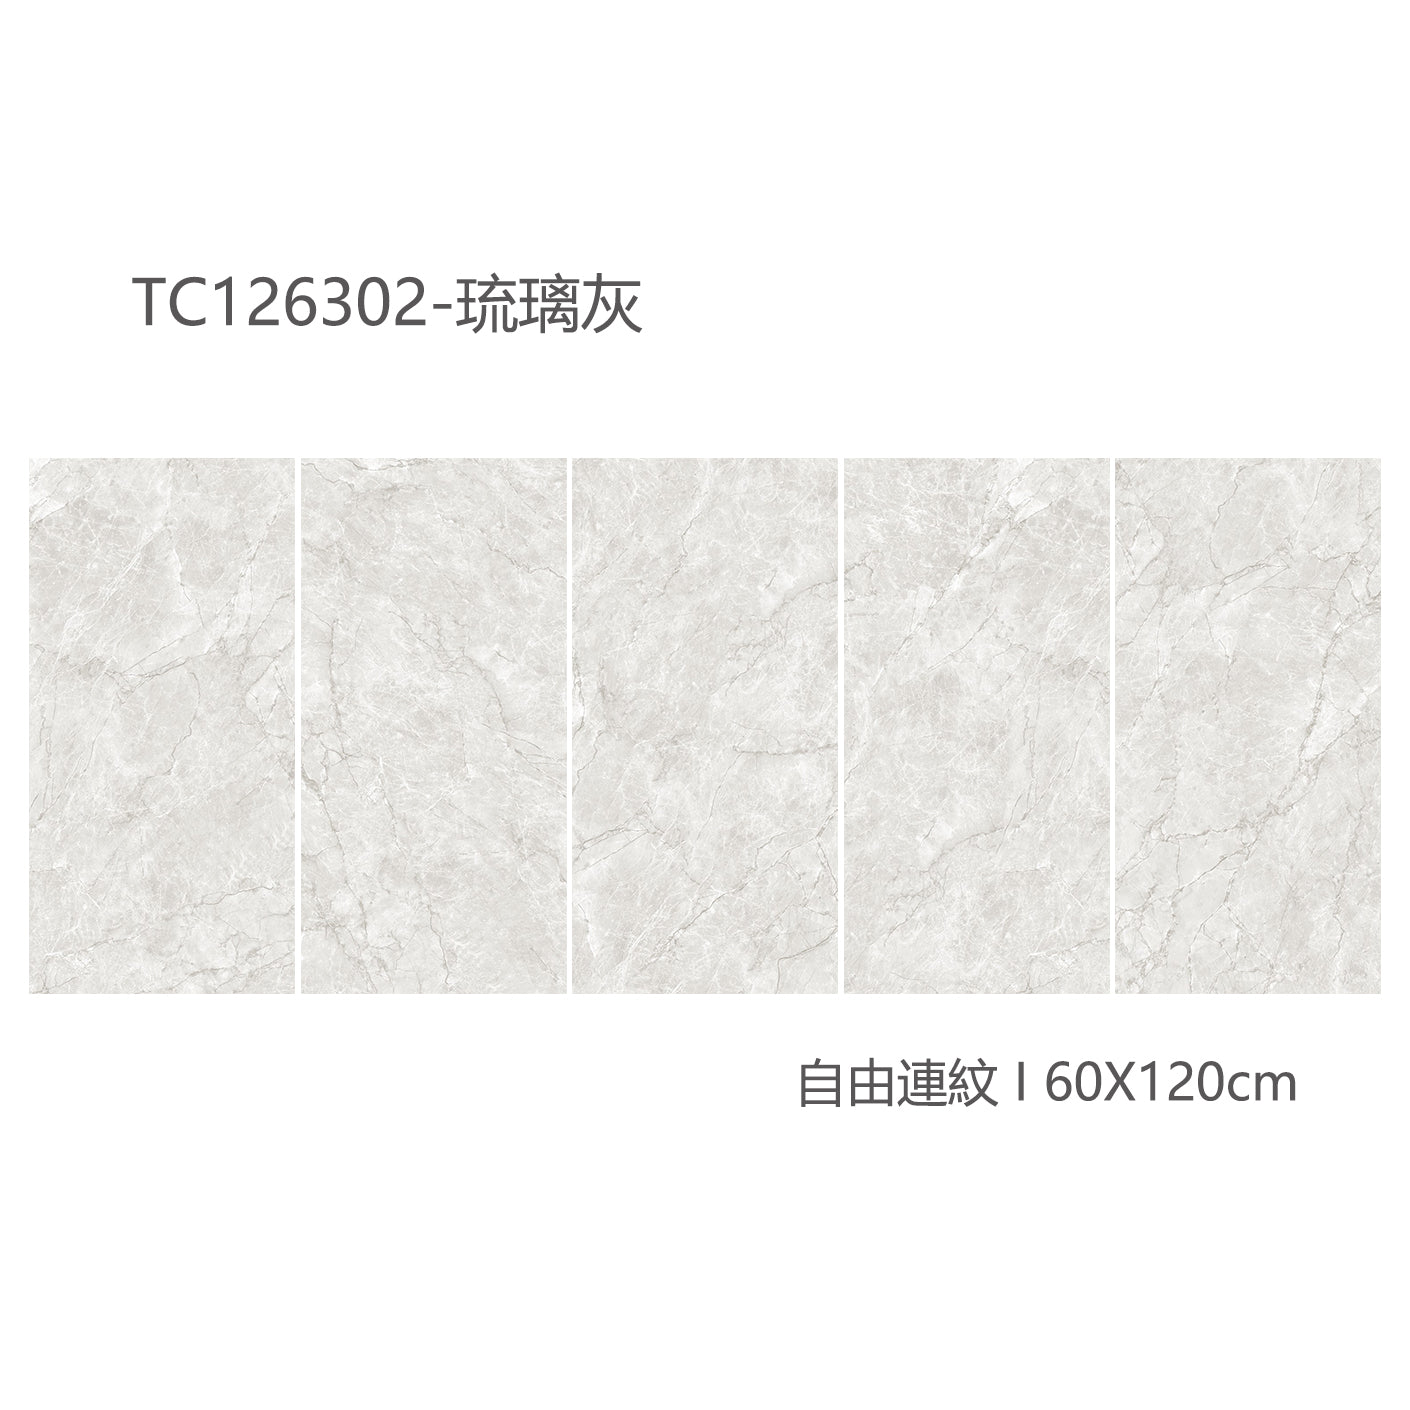 中國佛山瓷磚 China Foshan Marble Tiles Glossy 大理石瓷磚 連紋瓷磚 地磚 墻磚 釉面磚 亮光面 琉璃灰TC126302  60×120cm